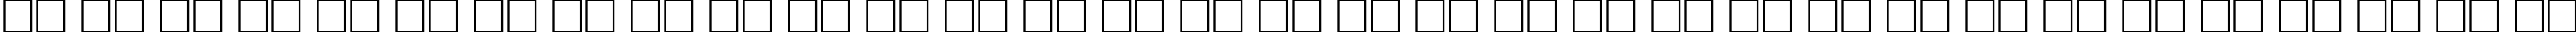 Пример написания русского алфавита шрифтом DicotMedium Regular